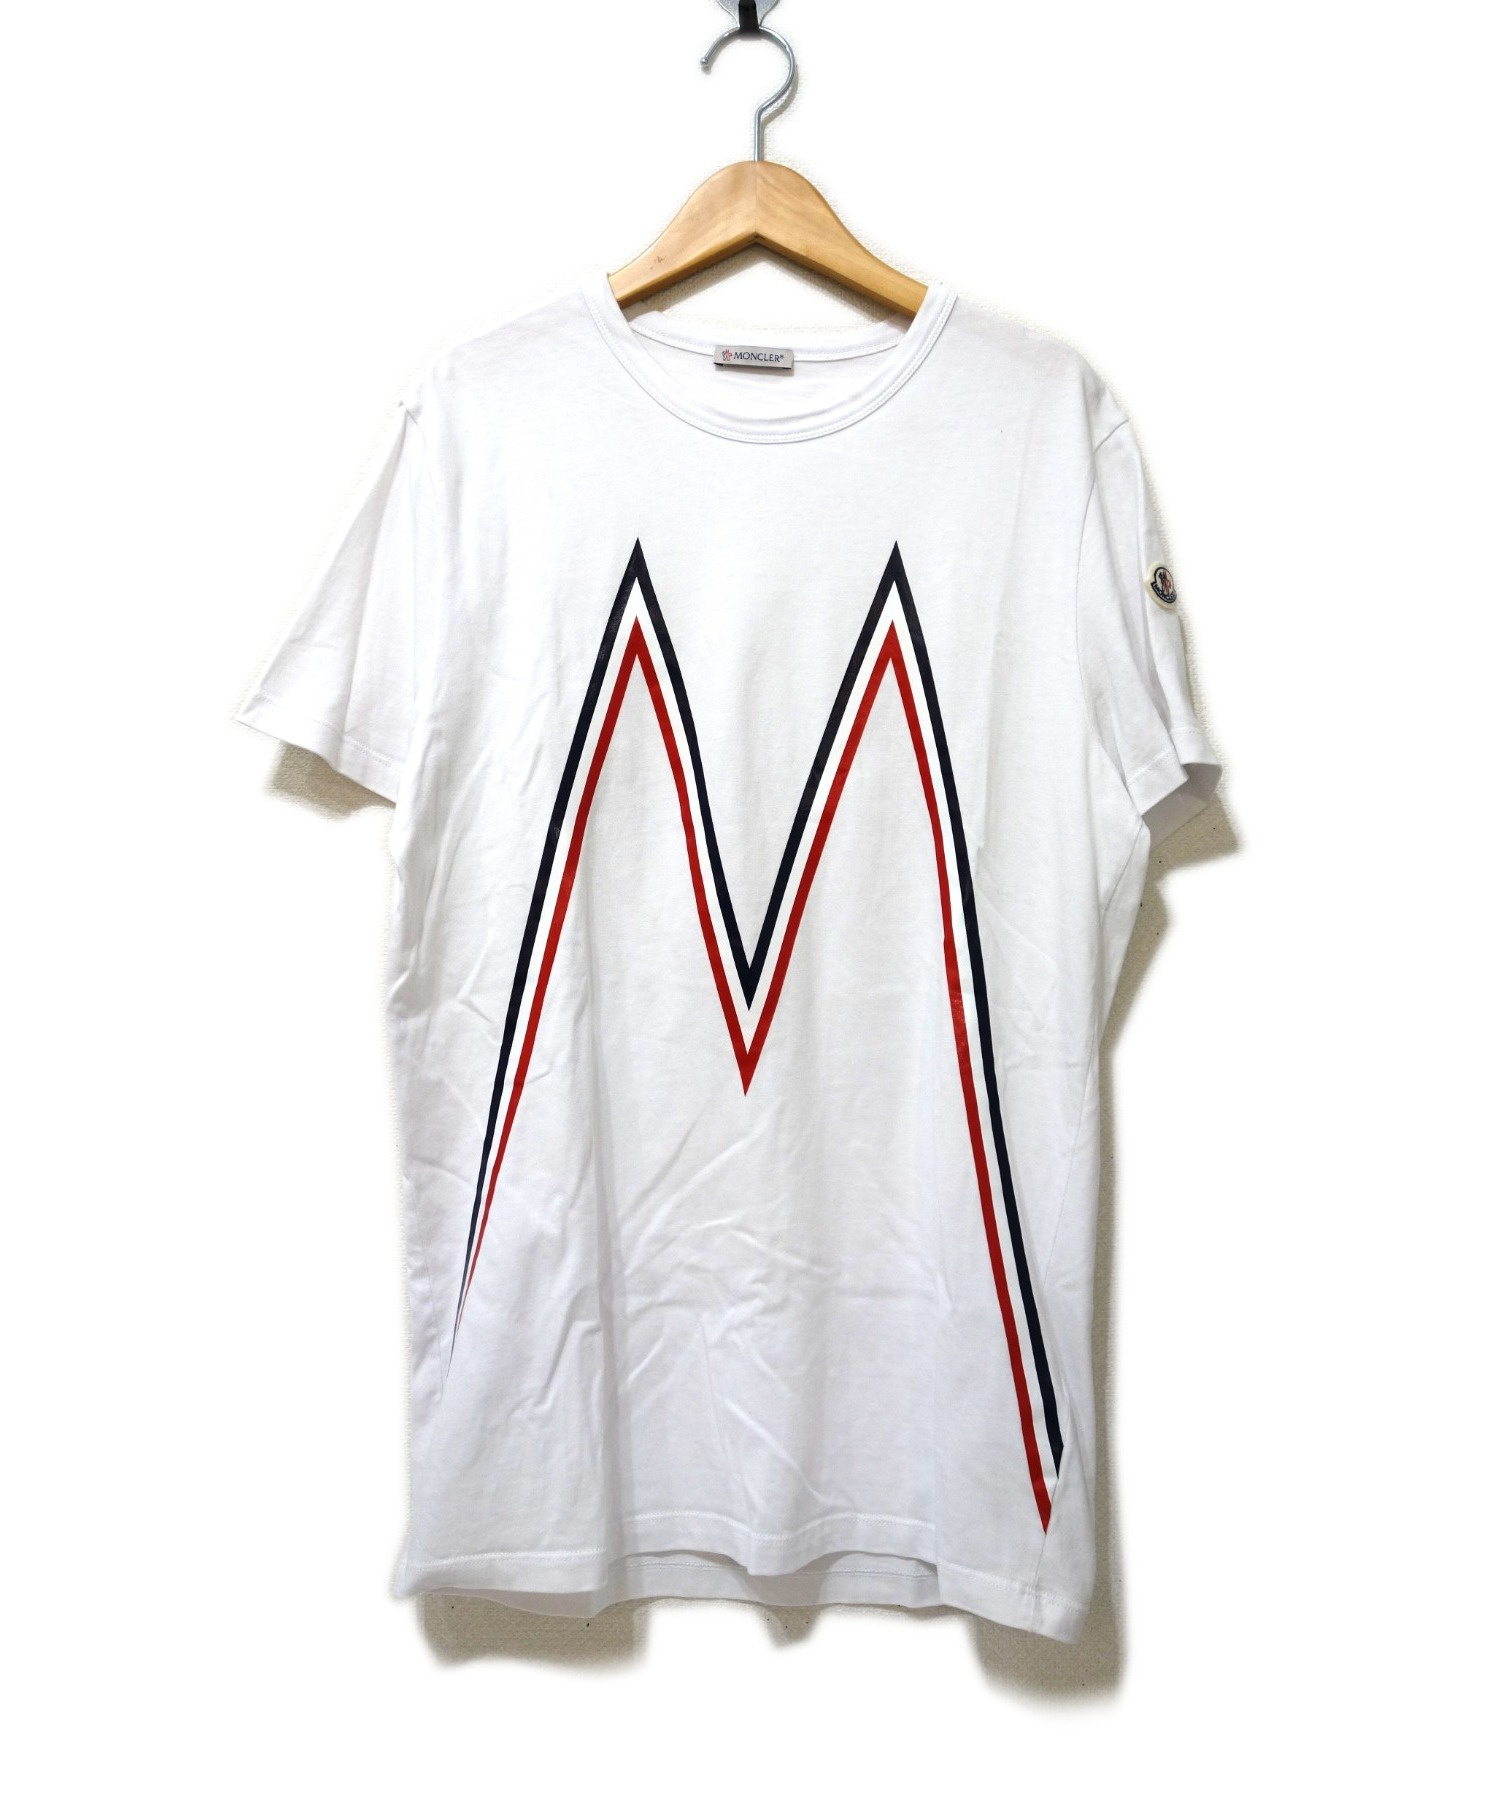 Moncler モンクレール Mロゴカットソー Maglia T Shirt ホワイト サイズ M 19 aw E 90t ブランド古着の通販サイト ブランドコレクト